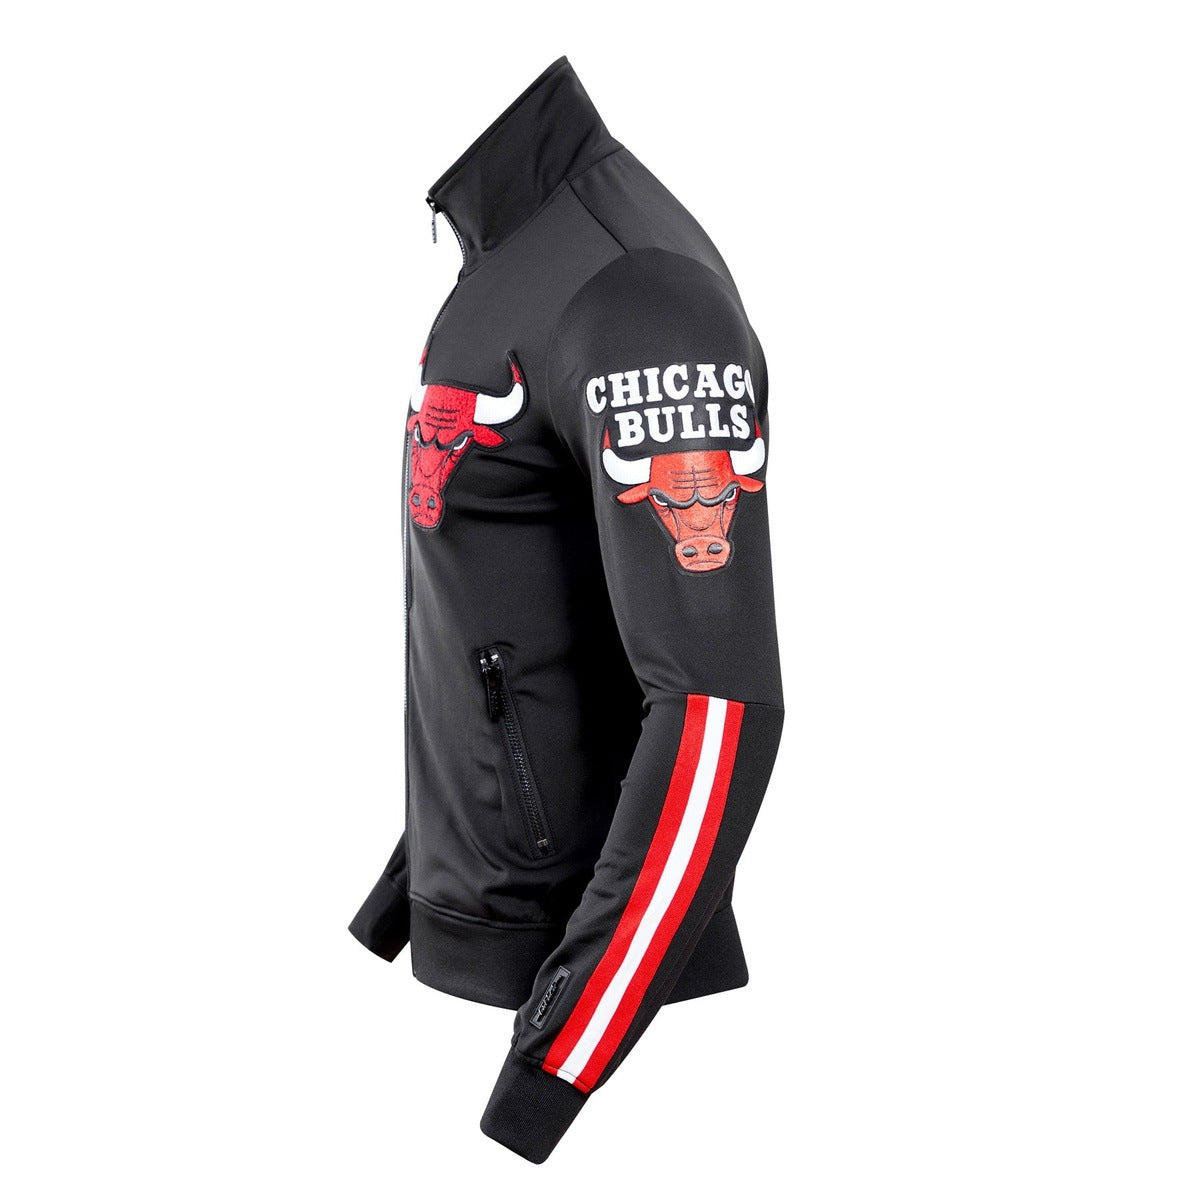 Chicago Bulls NBA Lifestyle Black Track Jacket